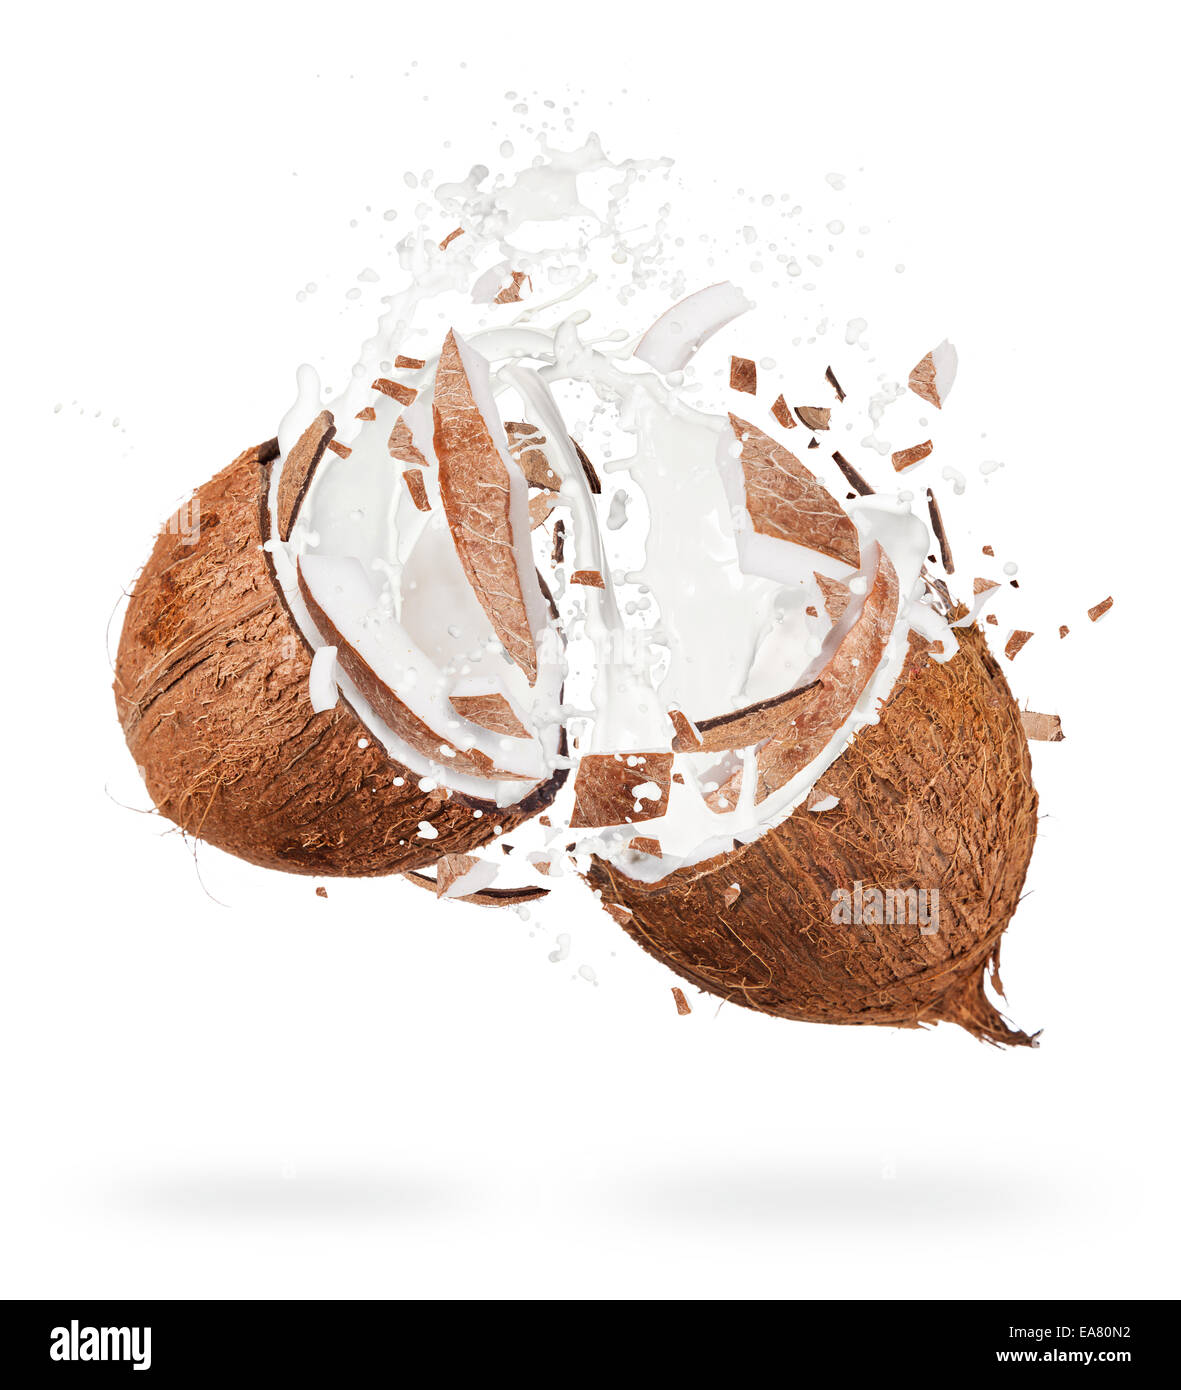 Isolato colpo di noci di cocco incrinato con spruzzi di acqua su sfondo bianco Foto Stock